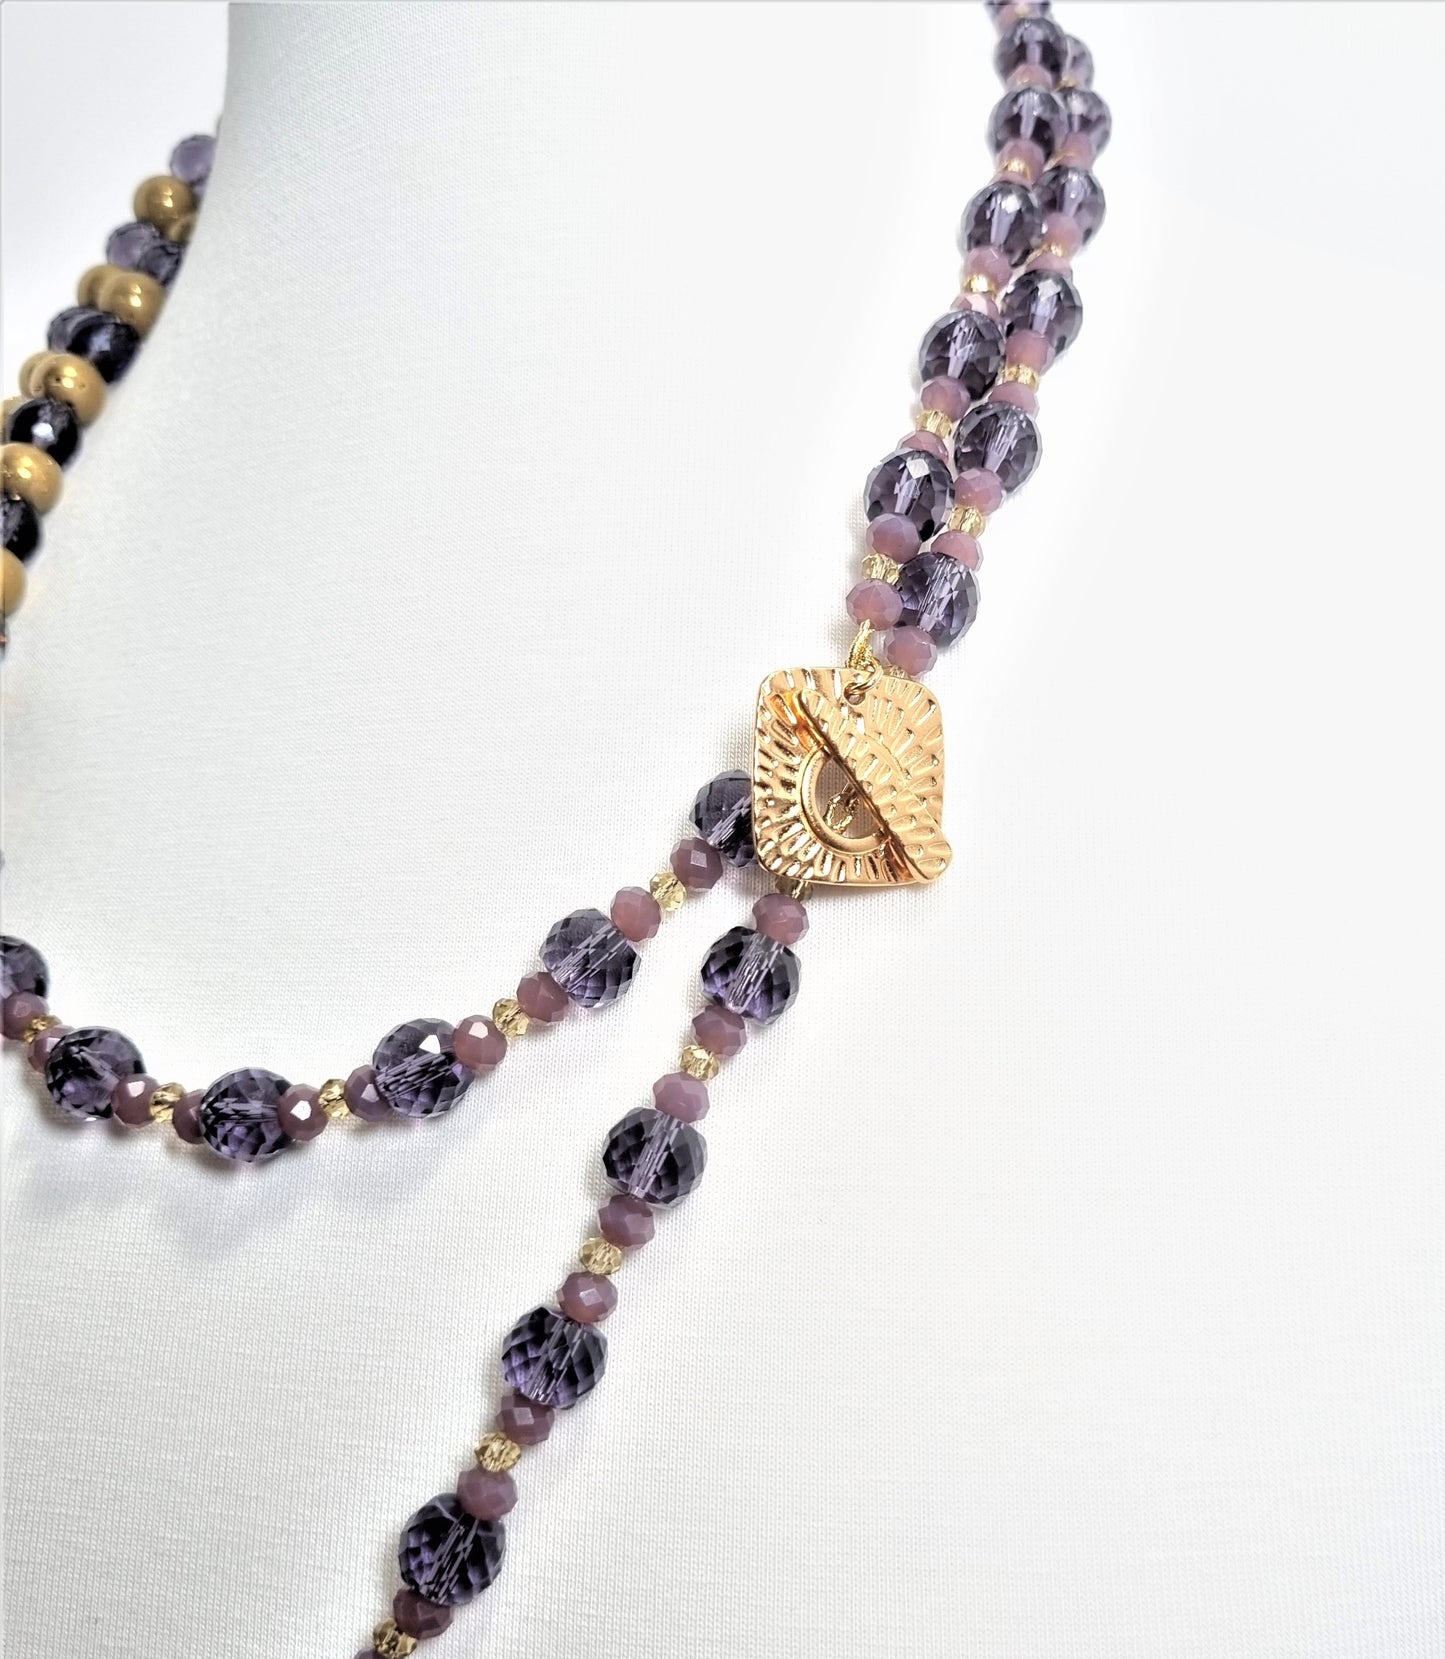 LUXURY collana .030 due fili cristallo viola, quarzo placcato oro, chiusura quadrata dorata.